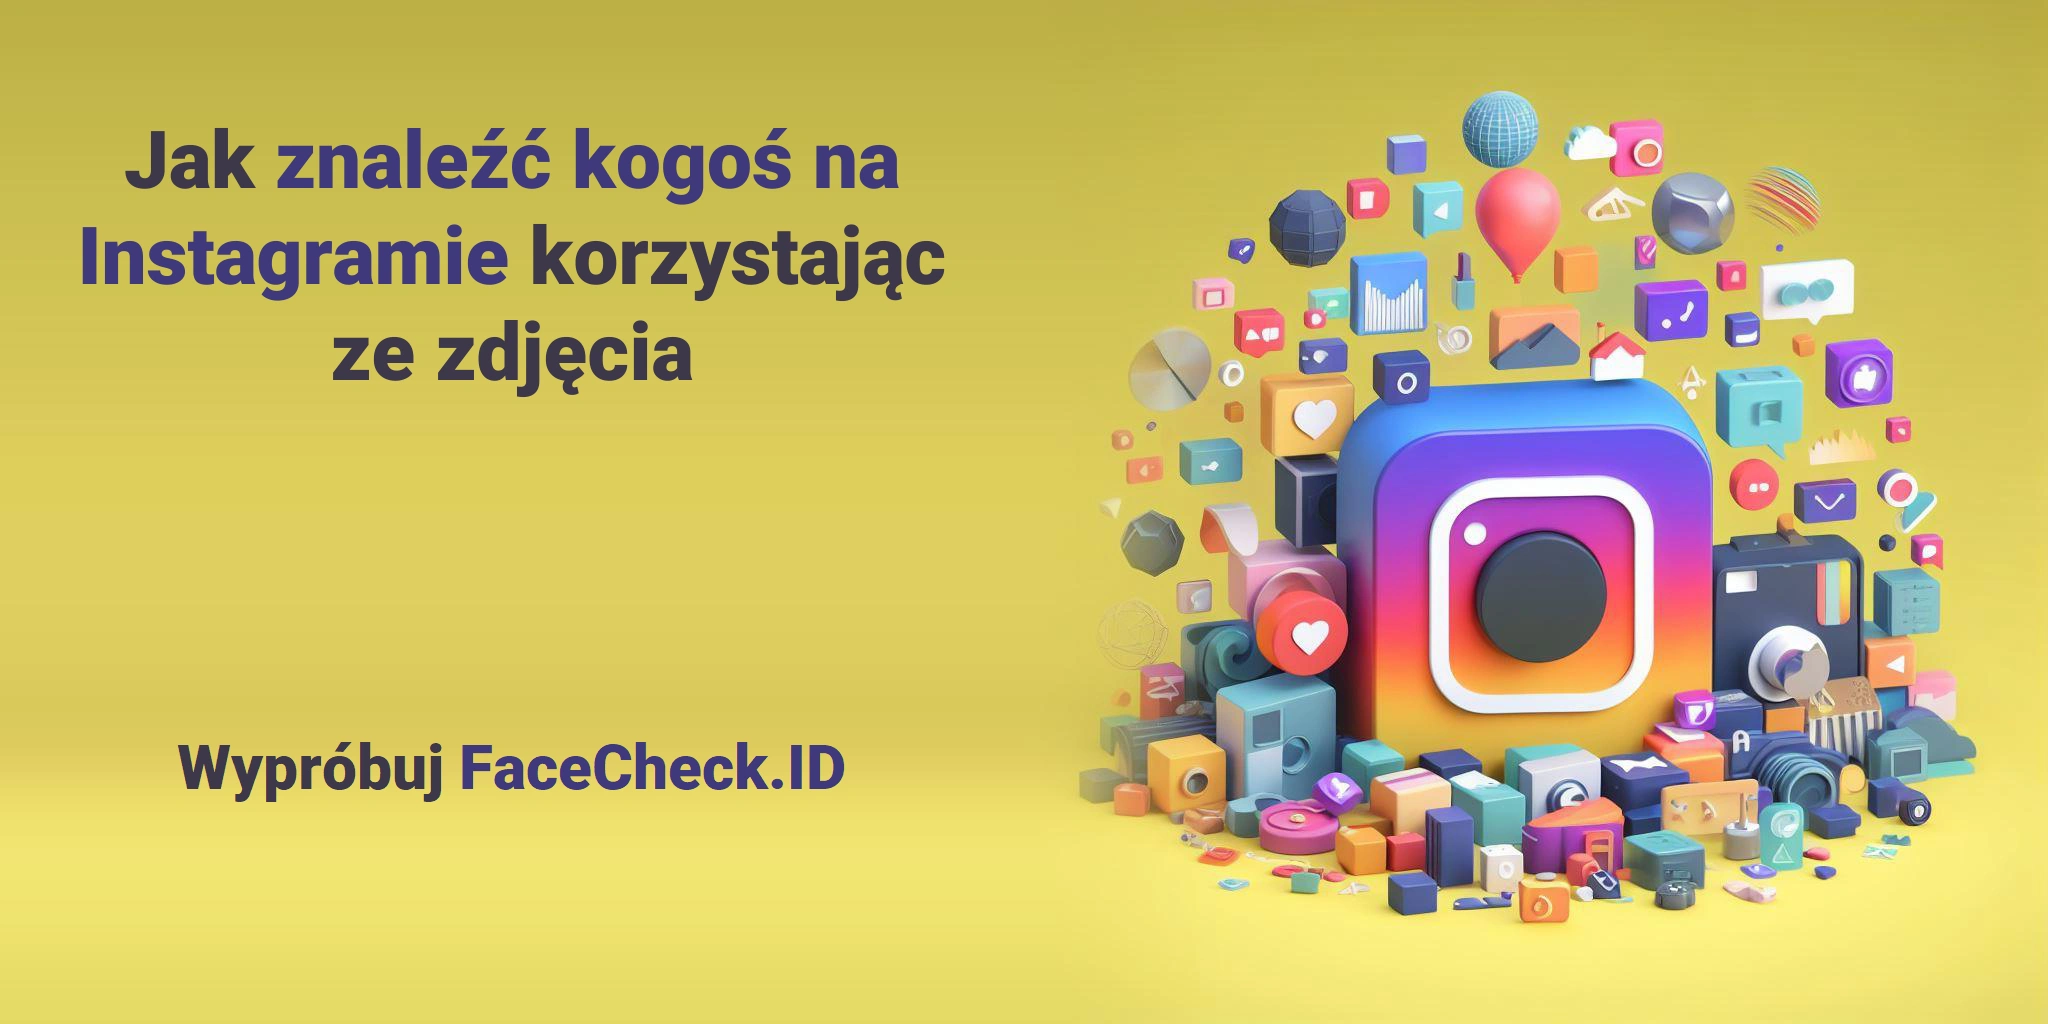 Jak znaleźć kogoś na Instagramie korzystając ze zdjęcia Wypróbuj FaceCheck.ID